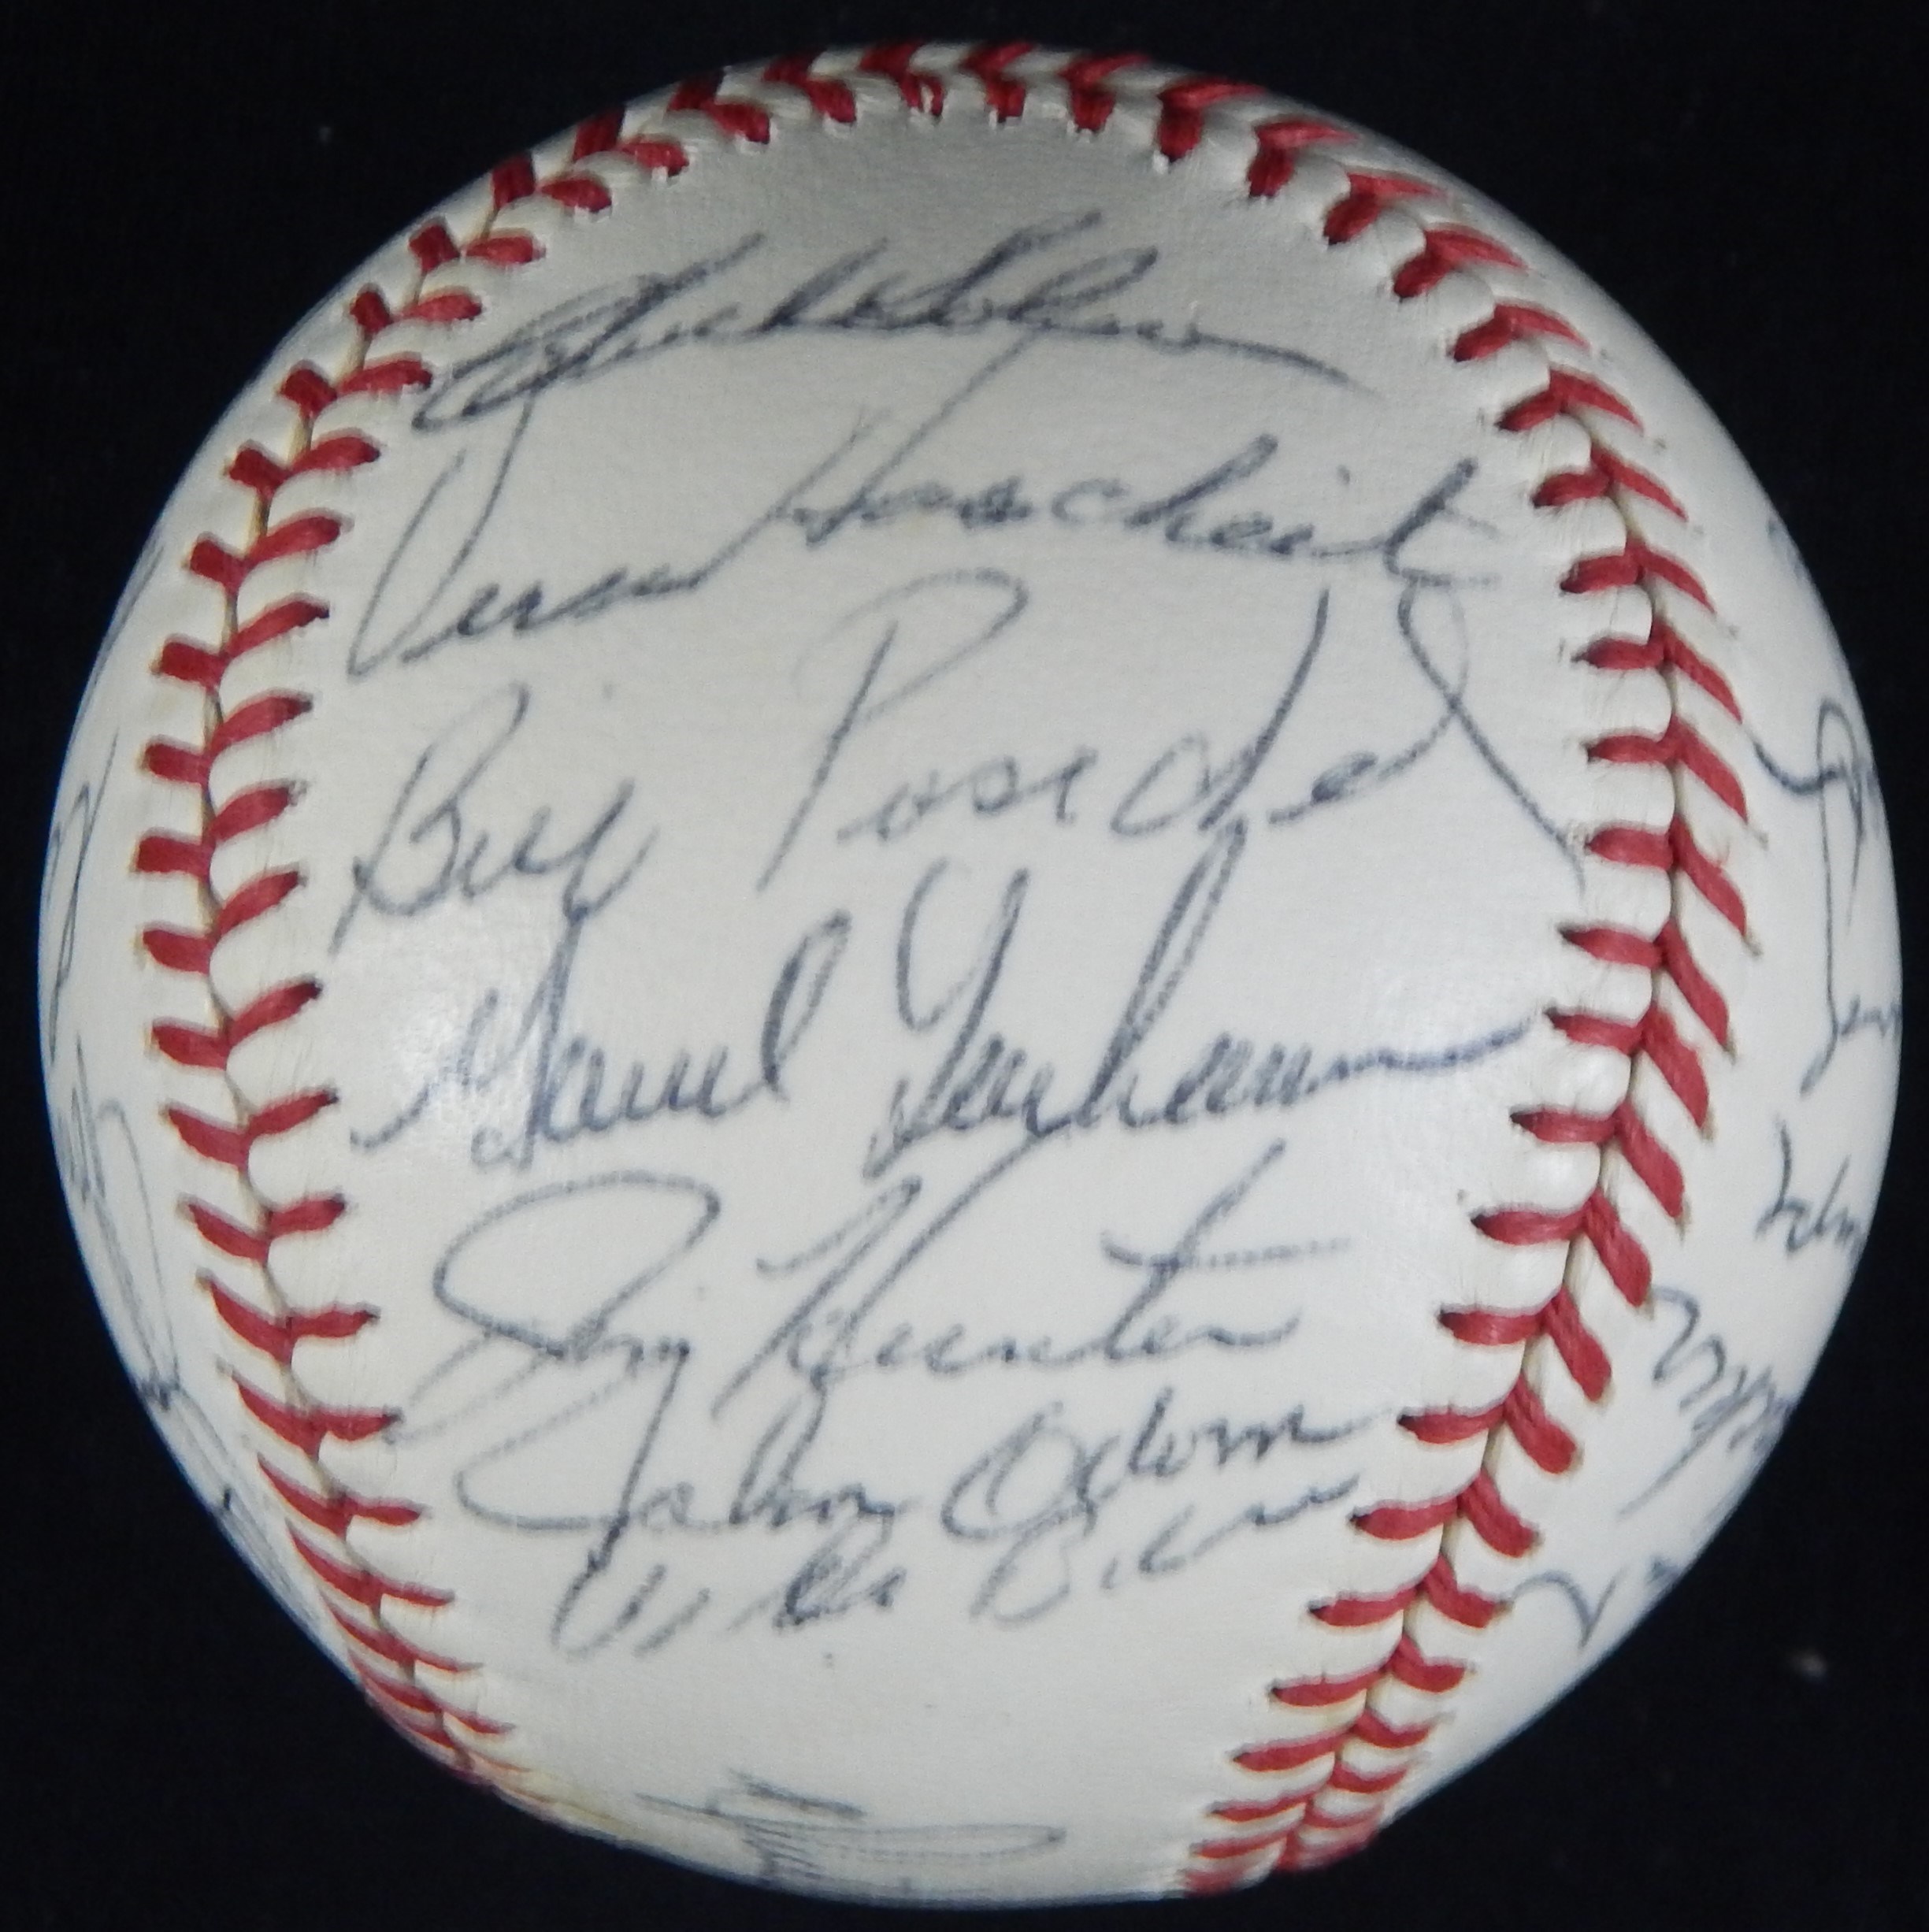 1971 Oakland A's Team Signed Baseball - JSA LOA